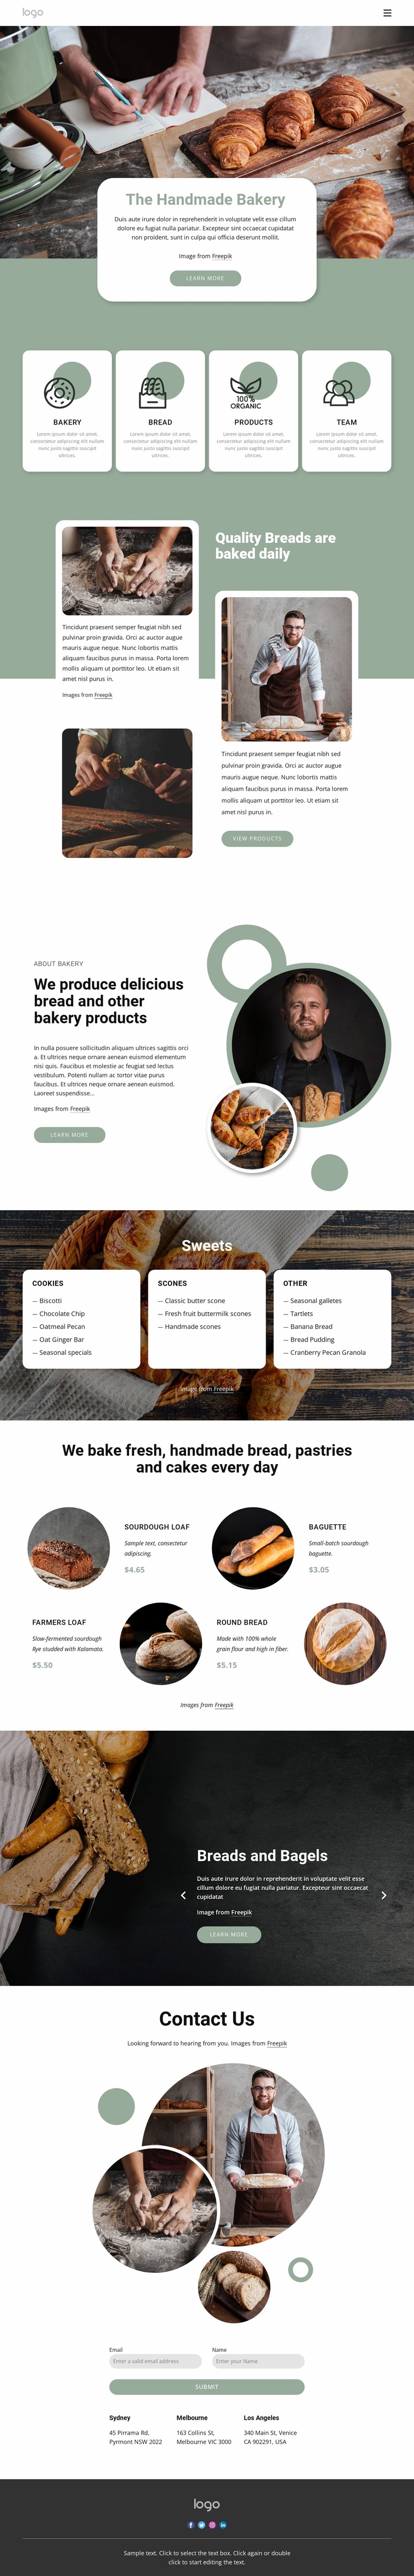 The handmade bakery Website Design